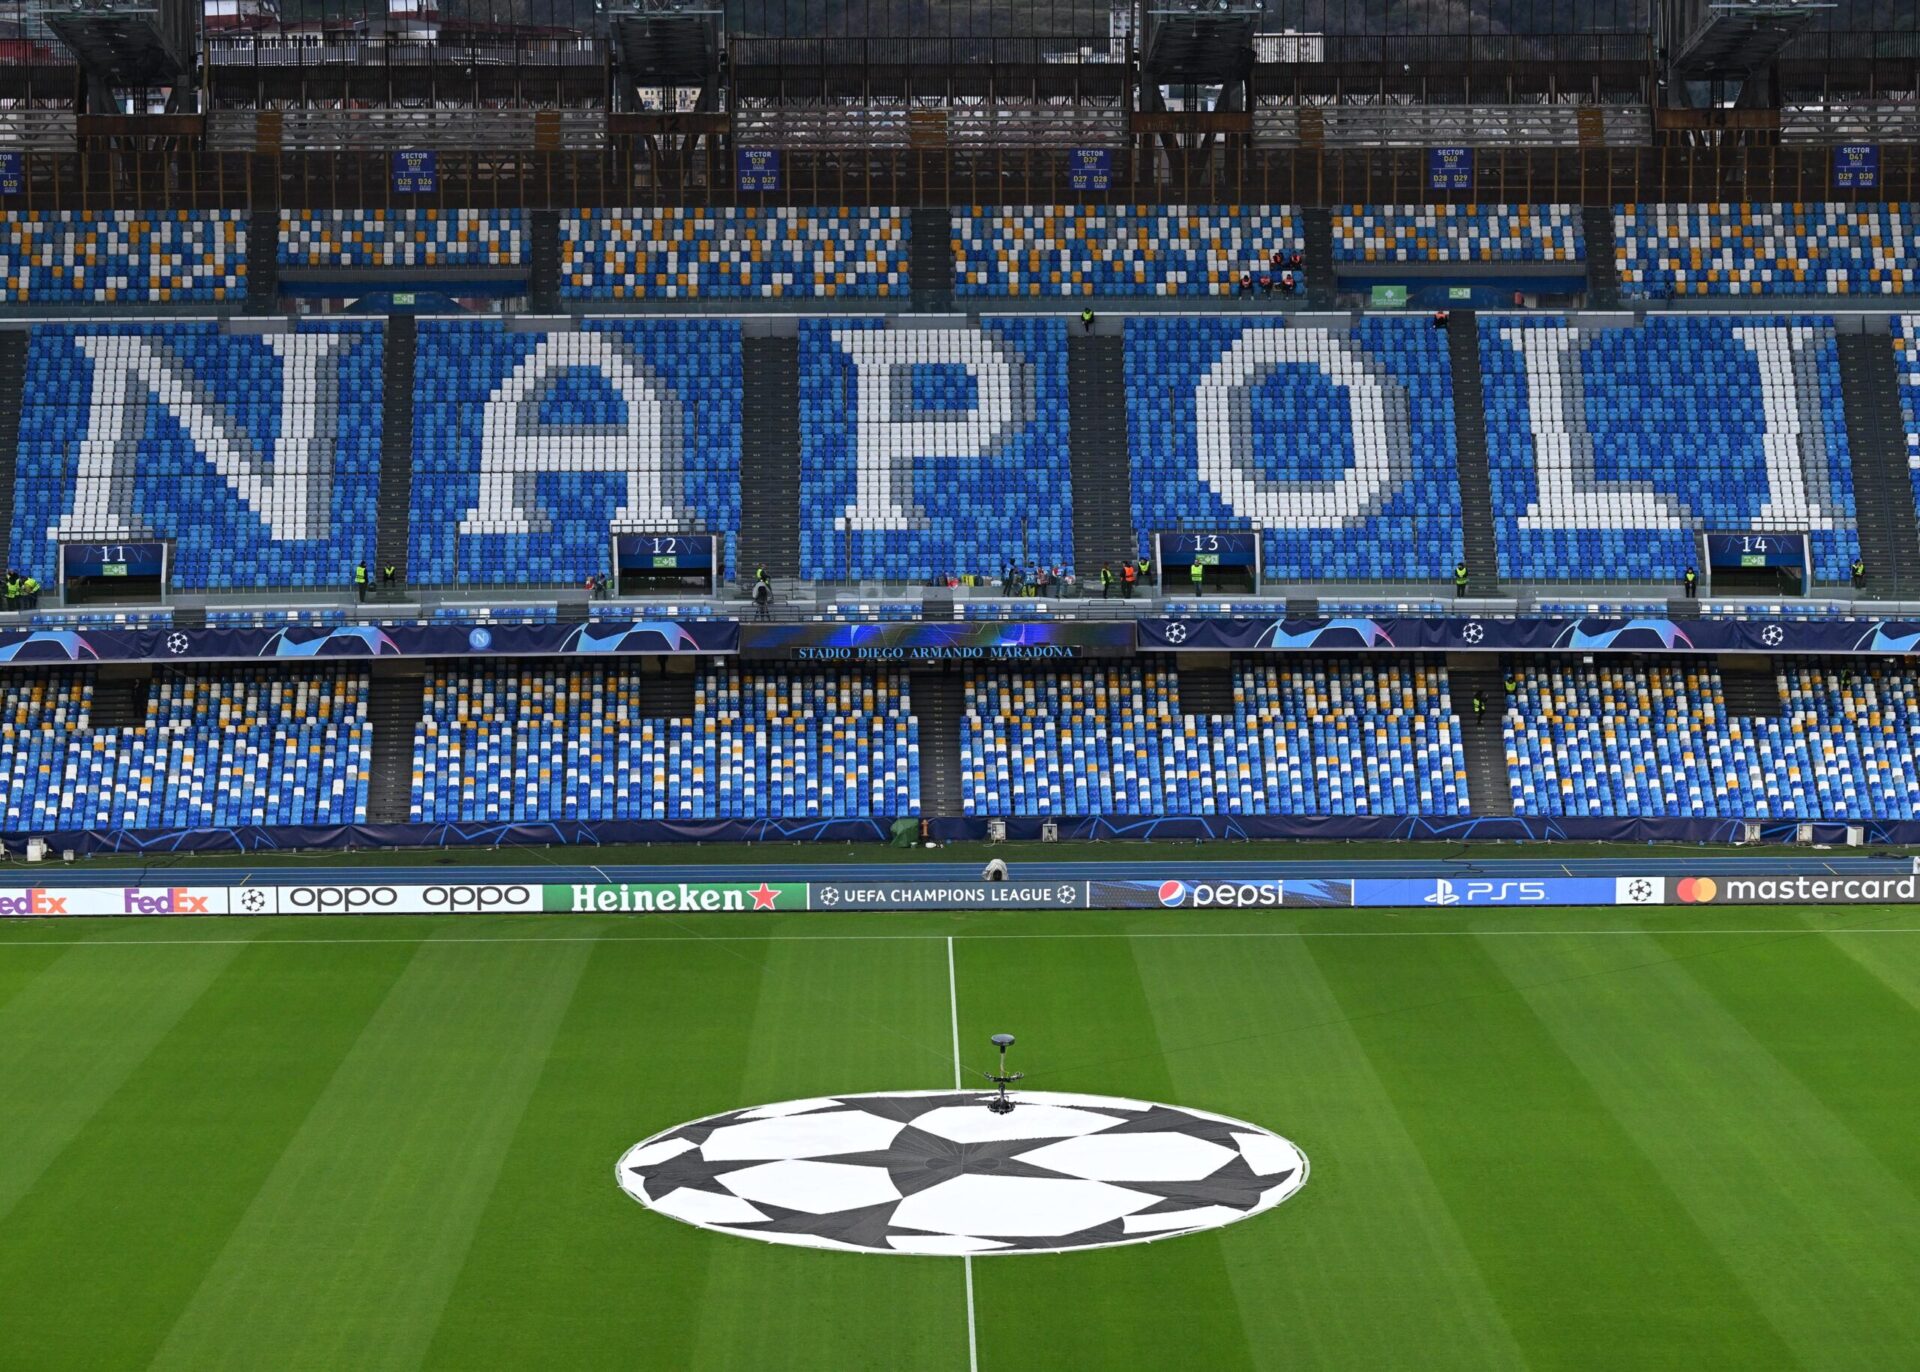 Live - Società Sportiva Calcio Napoli-Real Madrid Club de Futbol, la cronaca in diretta dallo stadio Maradona di UEFA Champions League